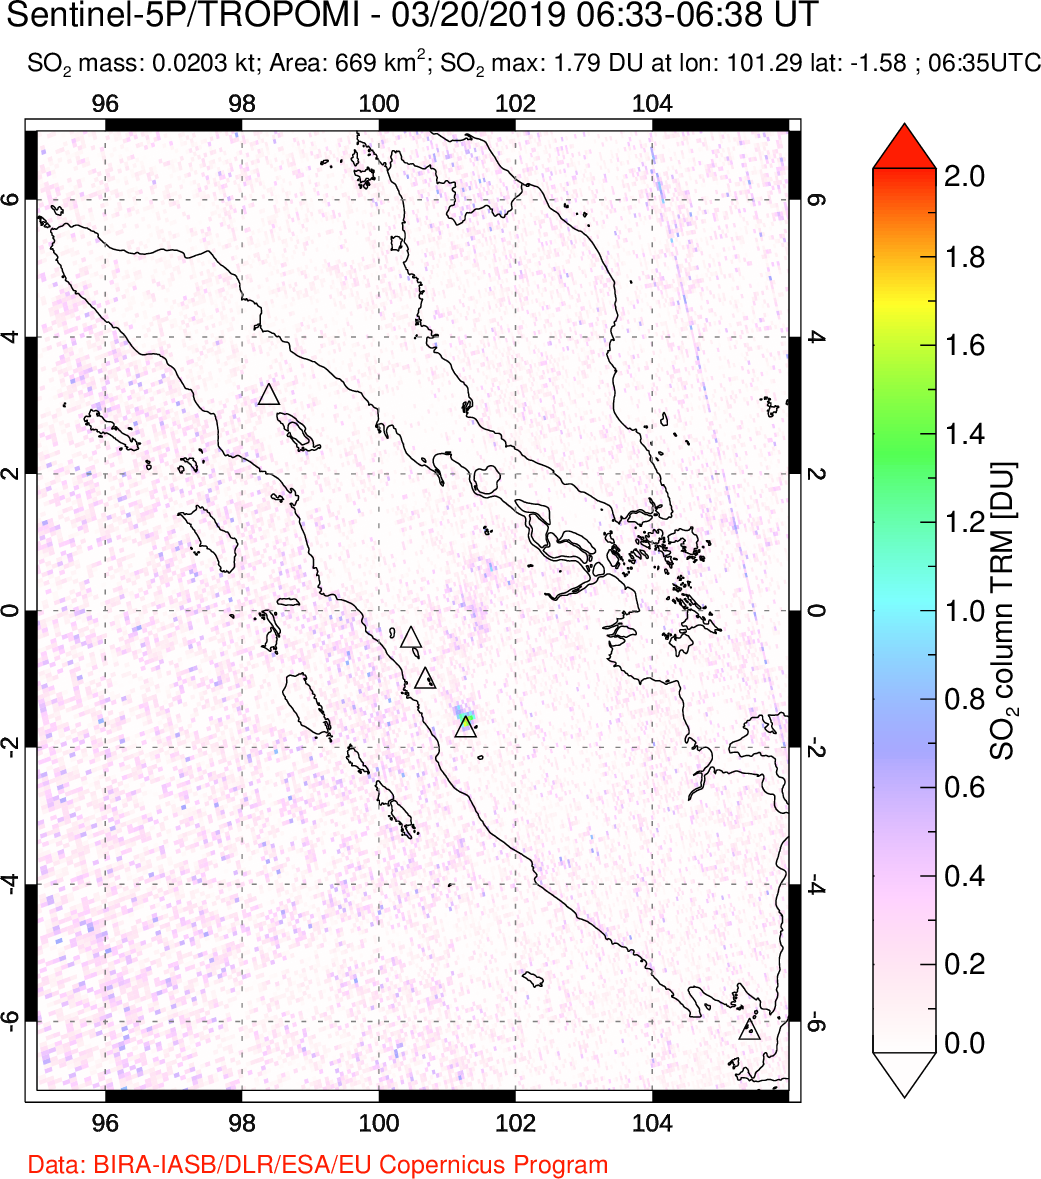 A sulfur dioxide image over Sumatra, Indonesia on Mar 20, 2019.